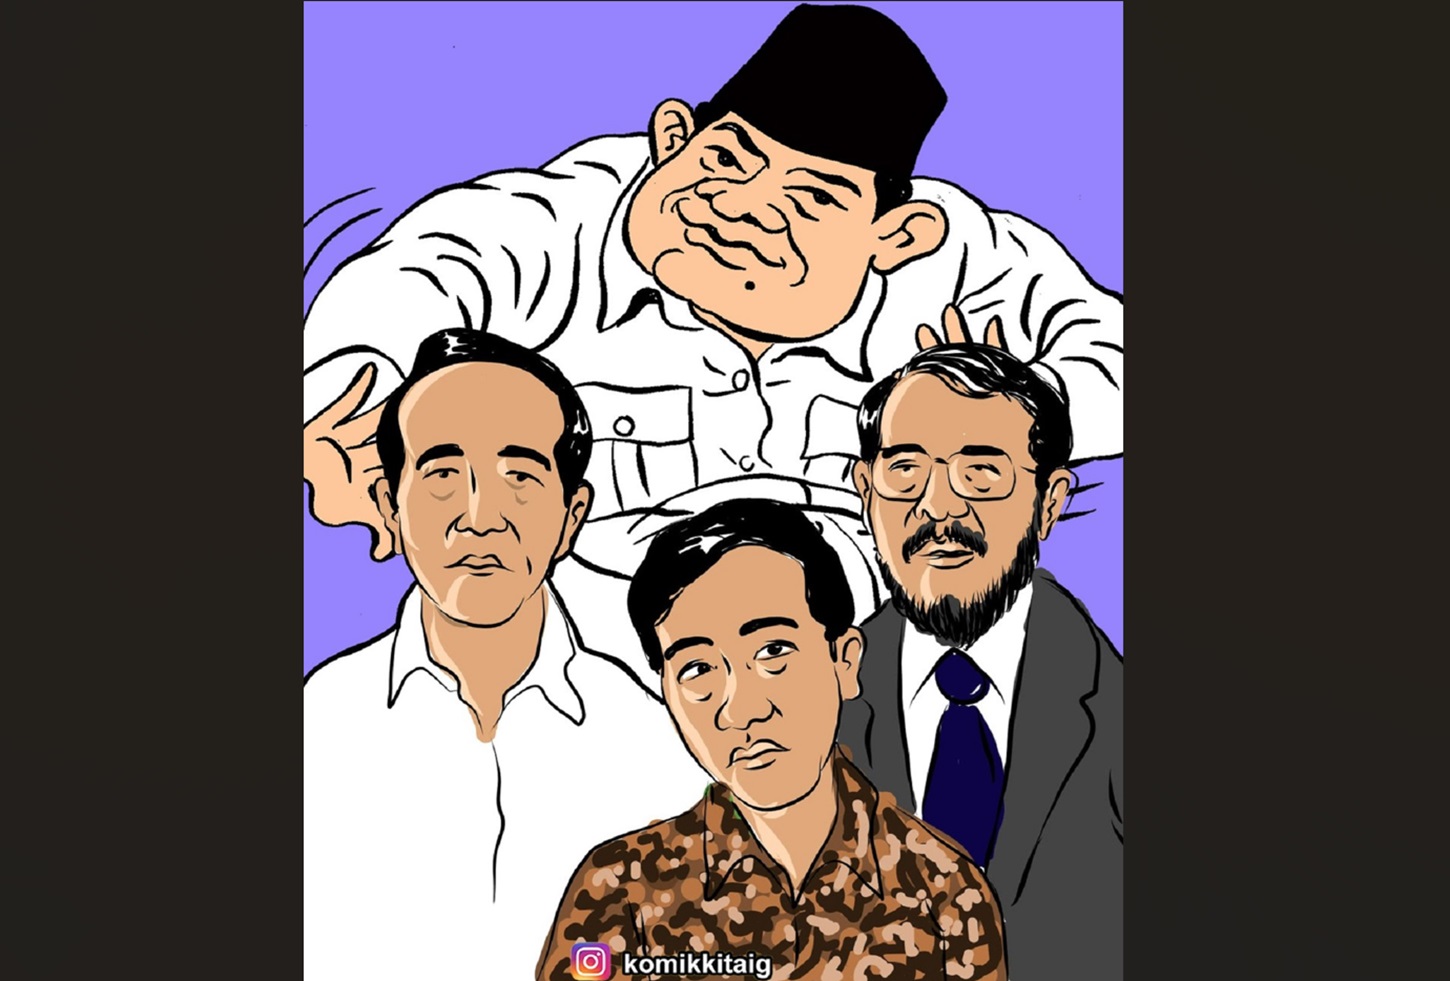 MK Ditarik ke Ranah Politik, Anwar Usman Layak Diberhentikan Secara Tidak Hormat